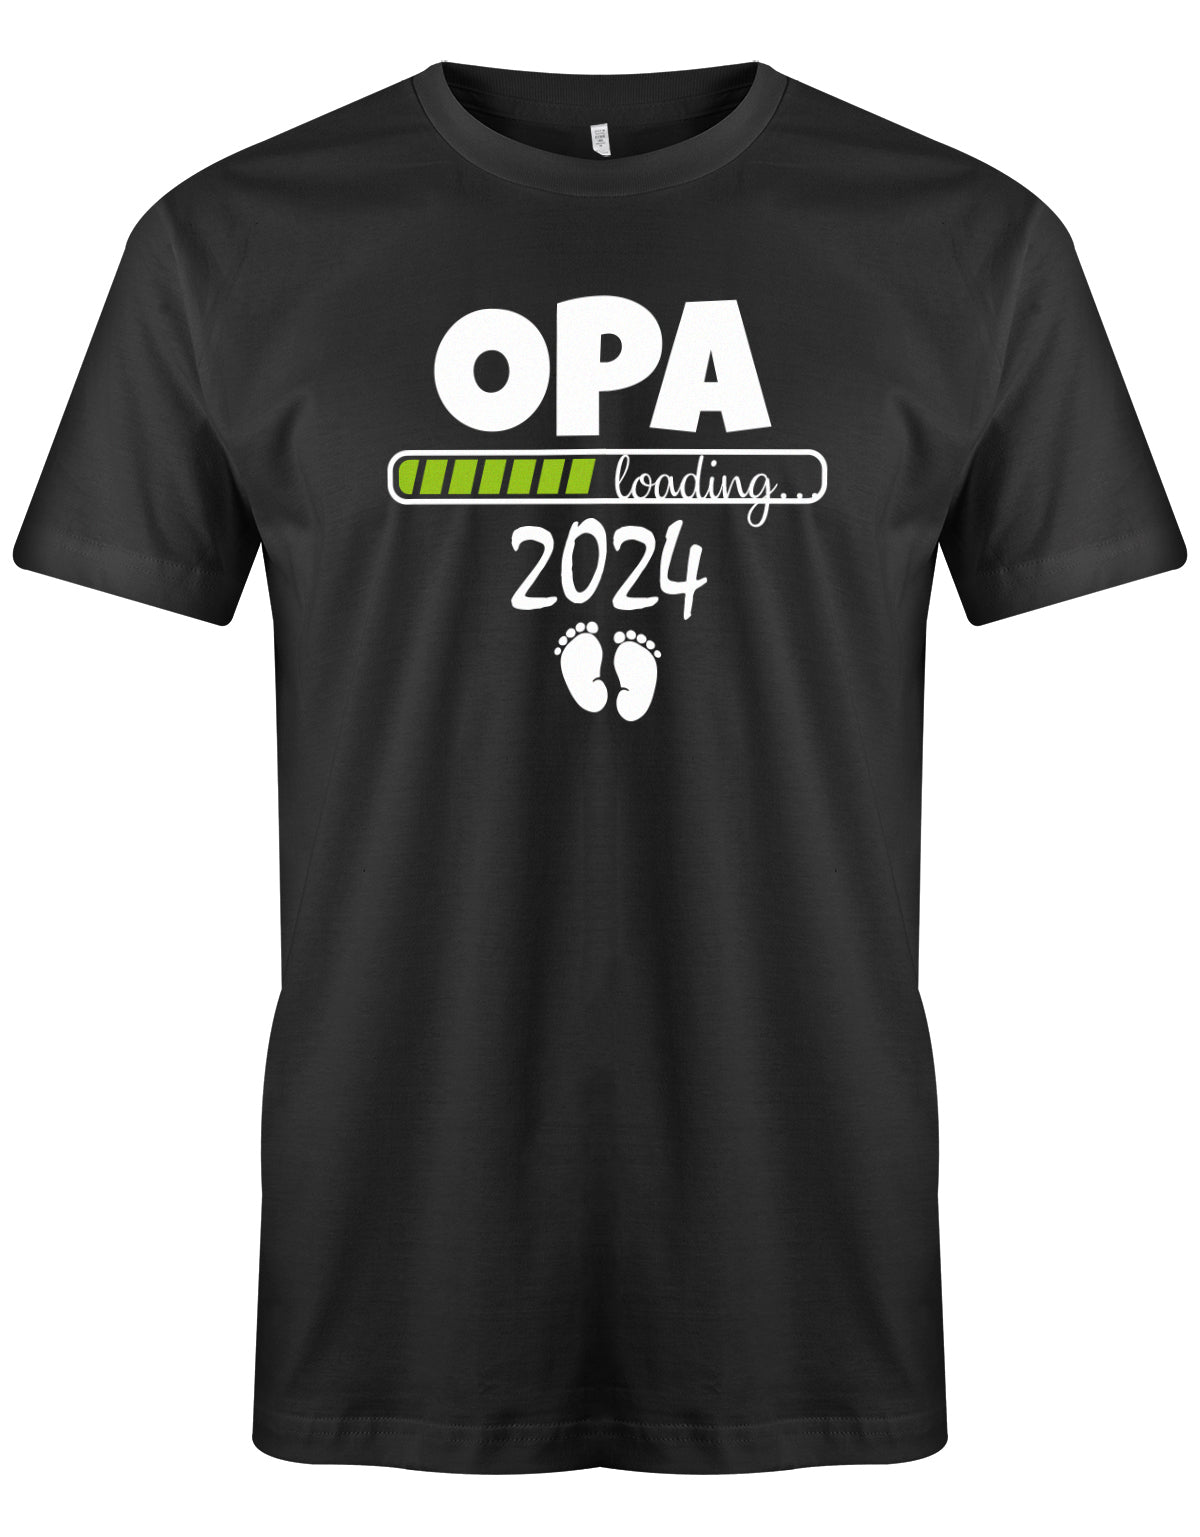 Opa T-Shirt Spruch für werdenden Opa - Opa Loading 2024 Balken lädt. Fußabdrücke Baby. Schwarz